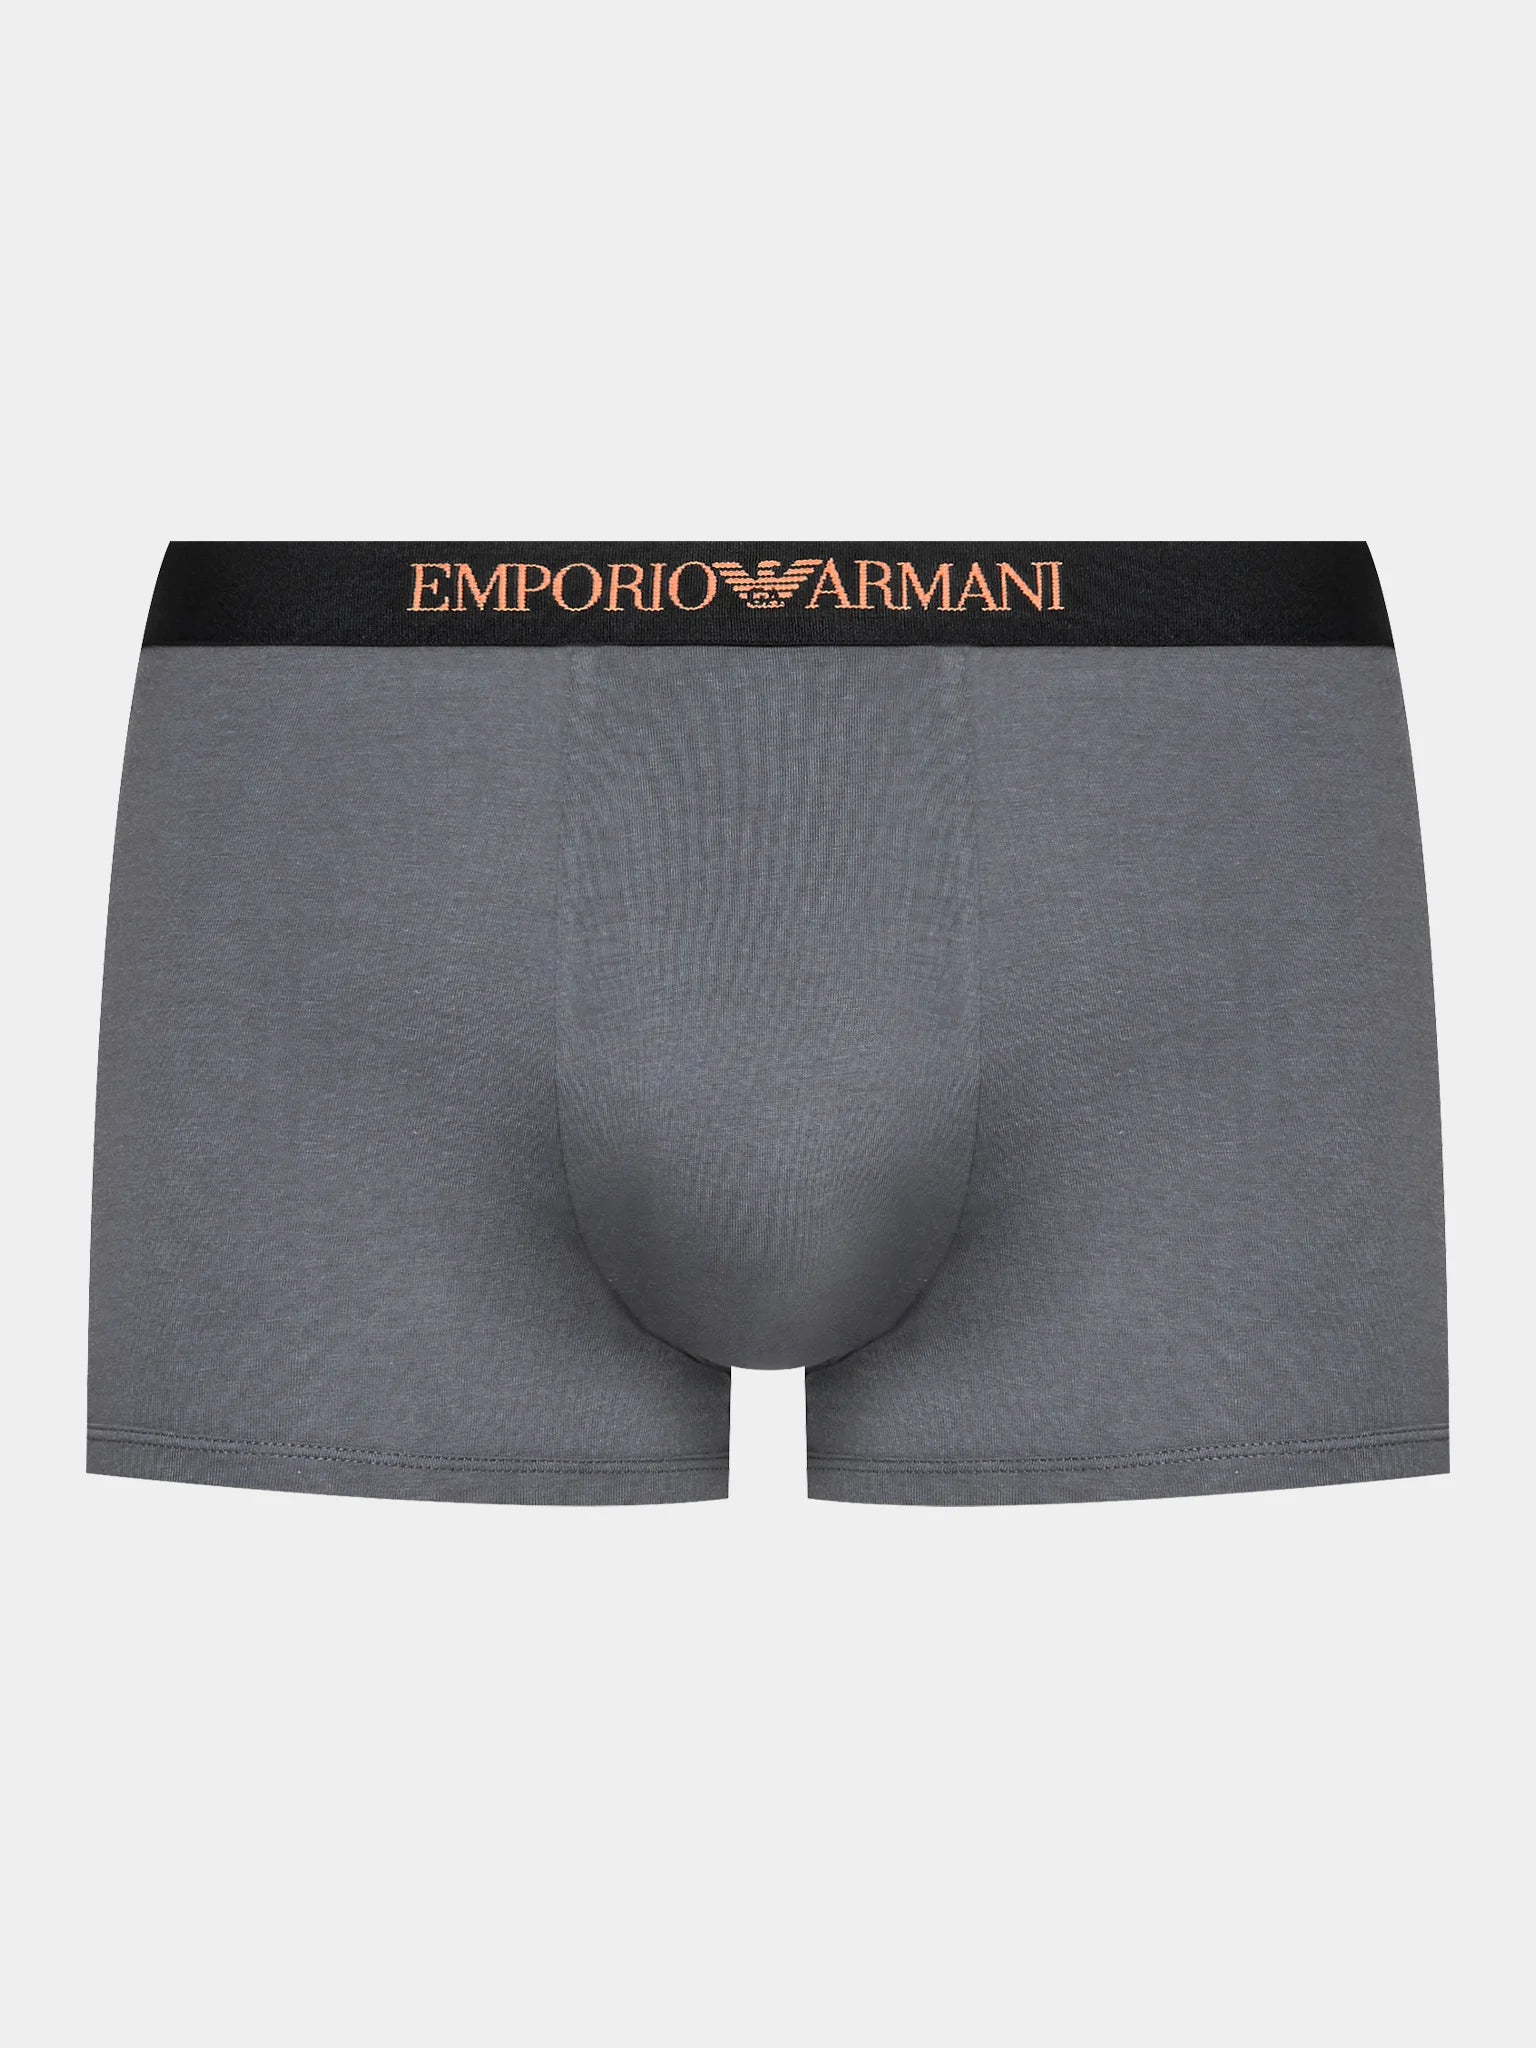 Emporio Armani boxers